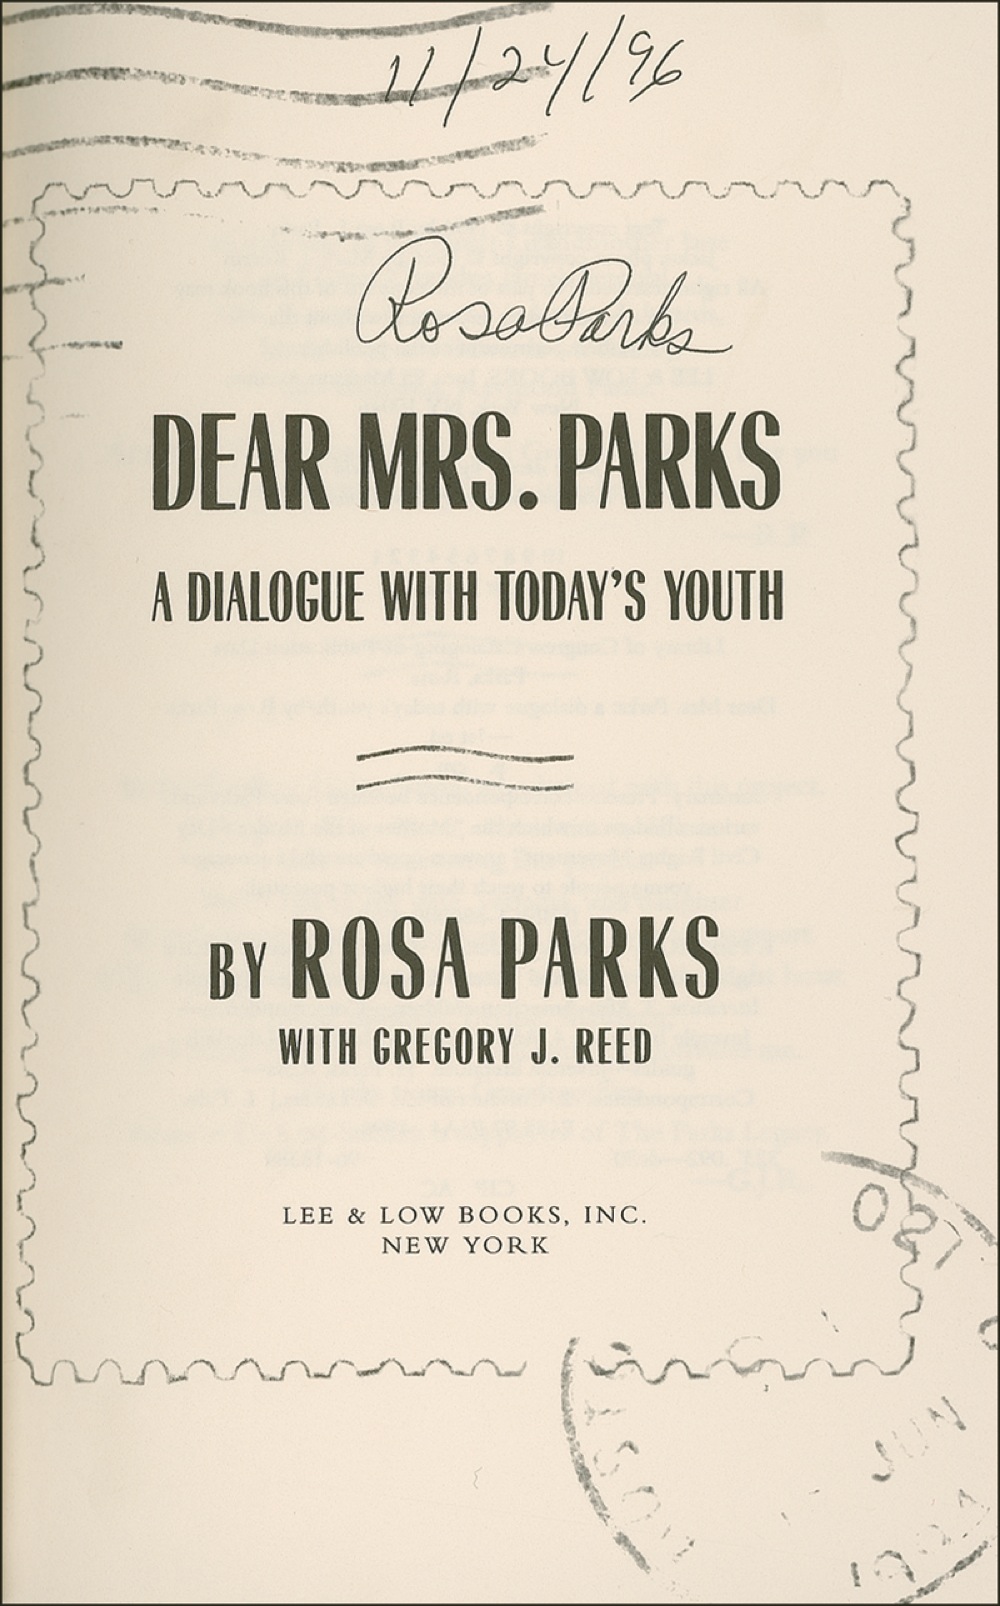 Lot #246 Rosa Parks